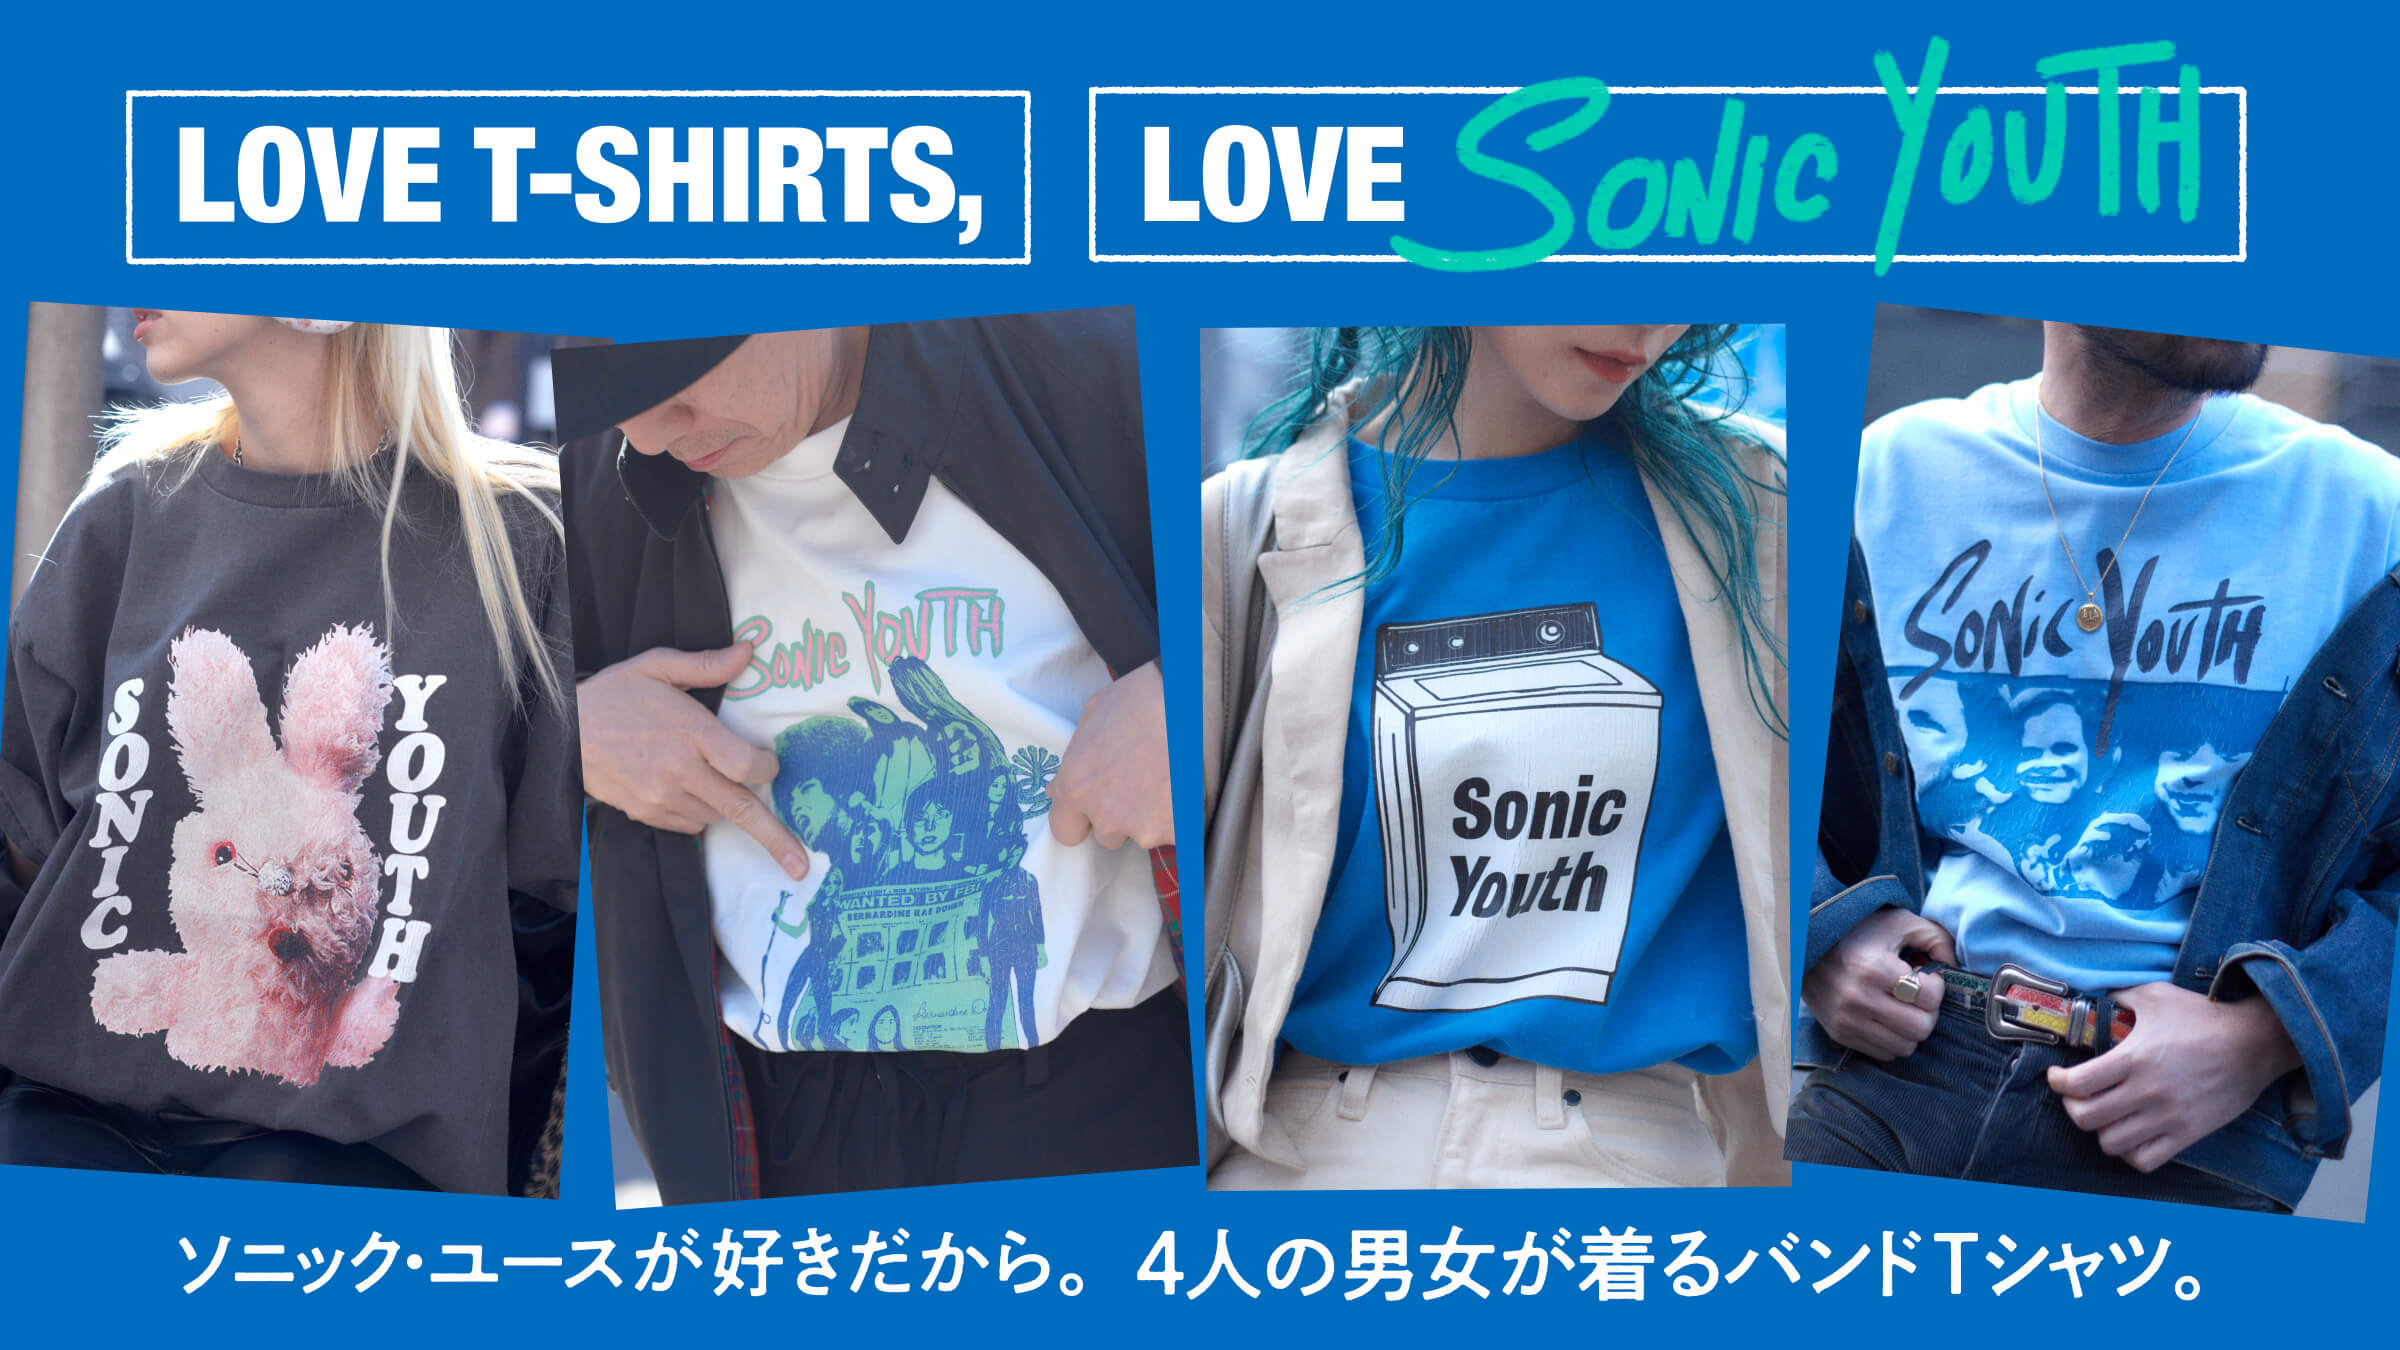 ソニック・ユースが好きだから。4人の男女が着るバンドTシャツ。